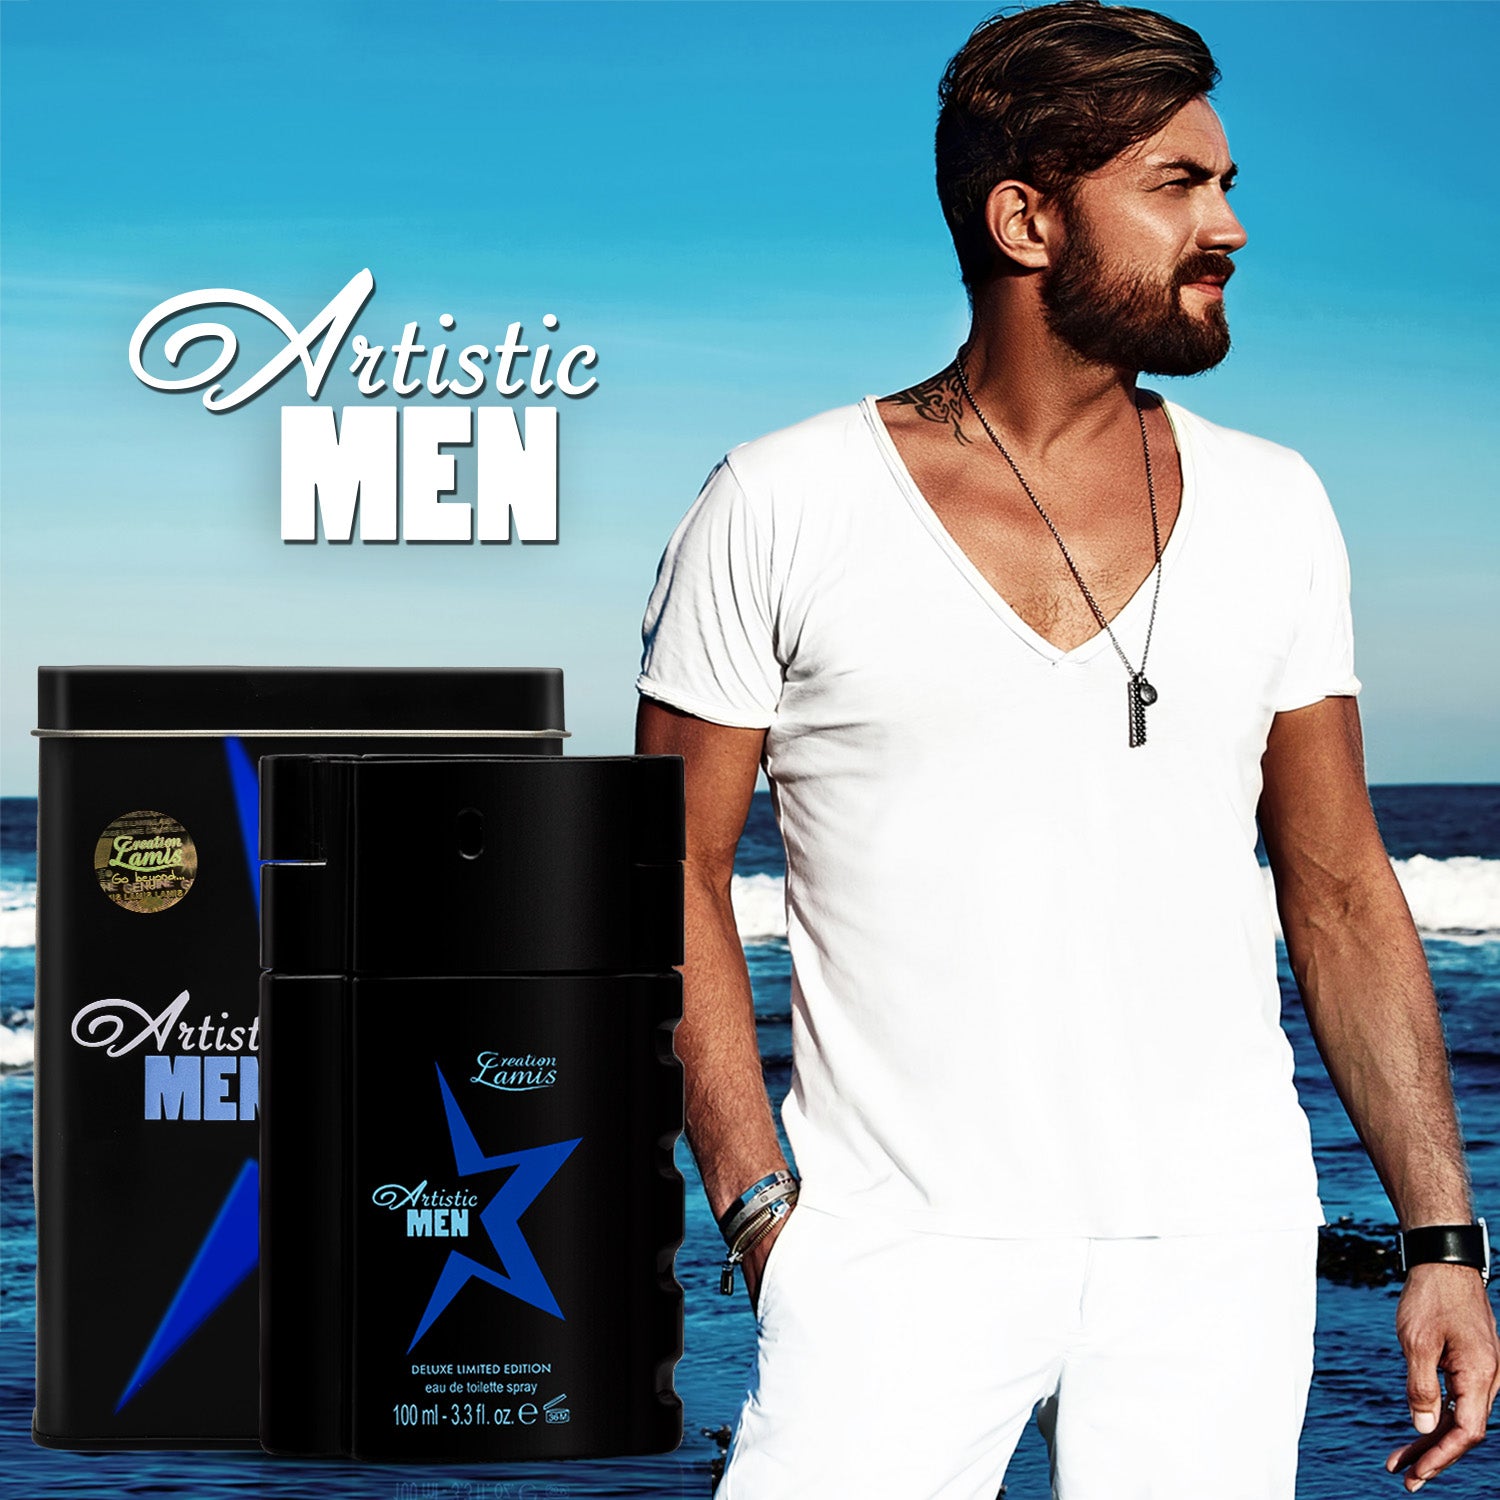 Creation Lamis ARTISTIC MEN - Men's Eau de Toilette fragrance